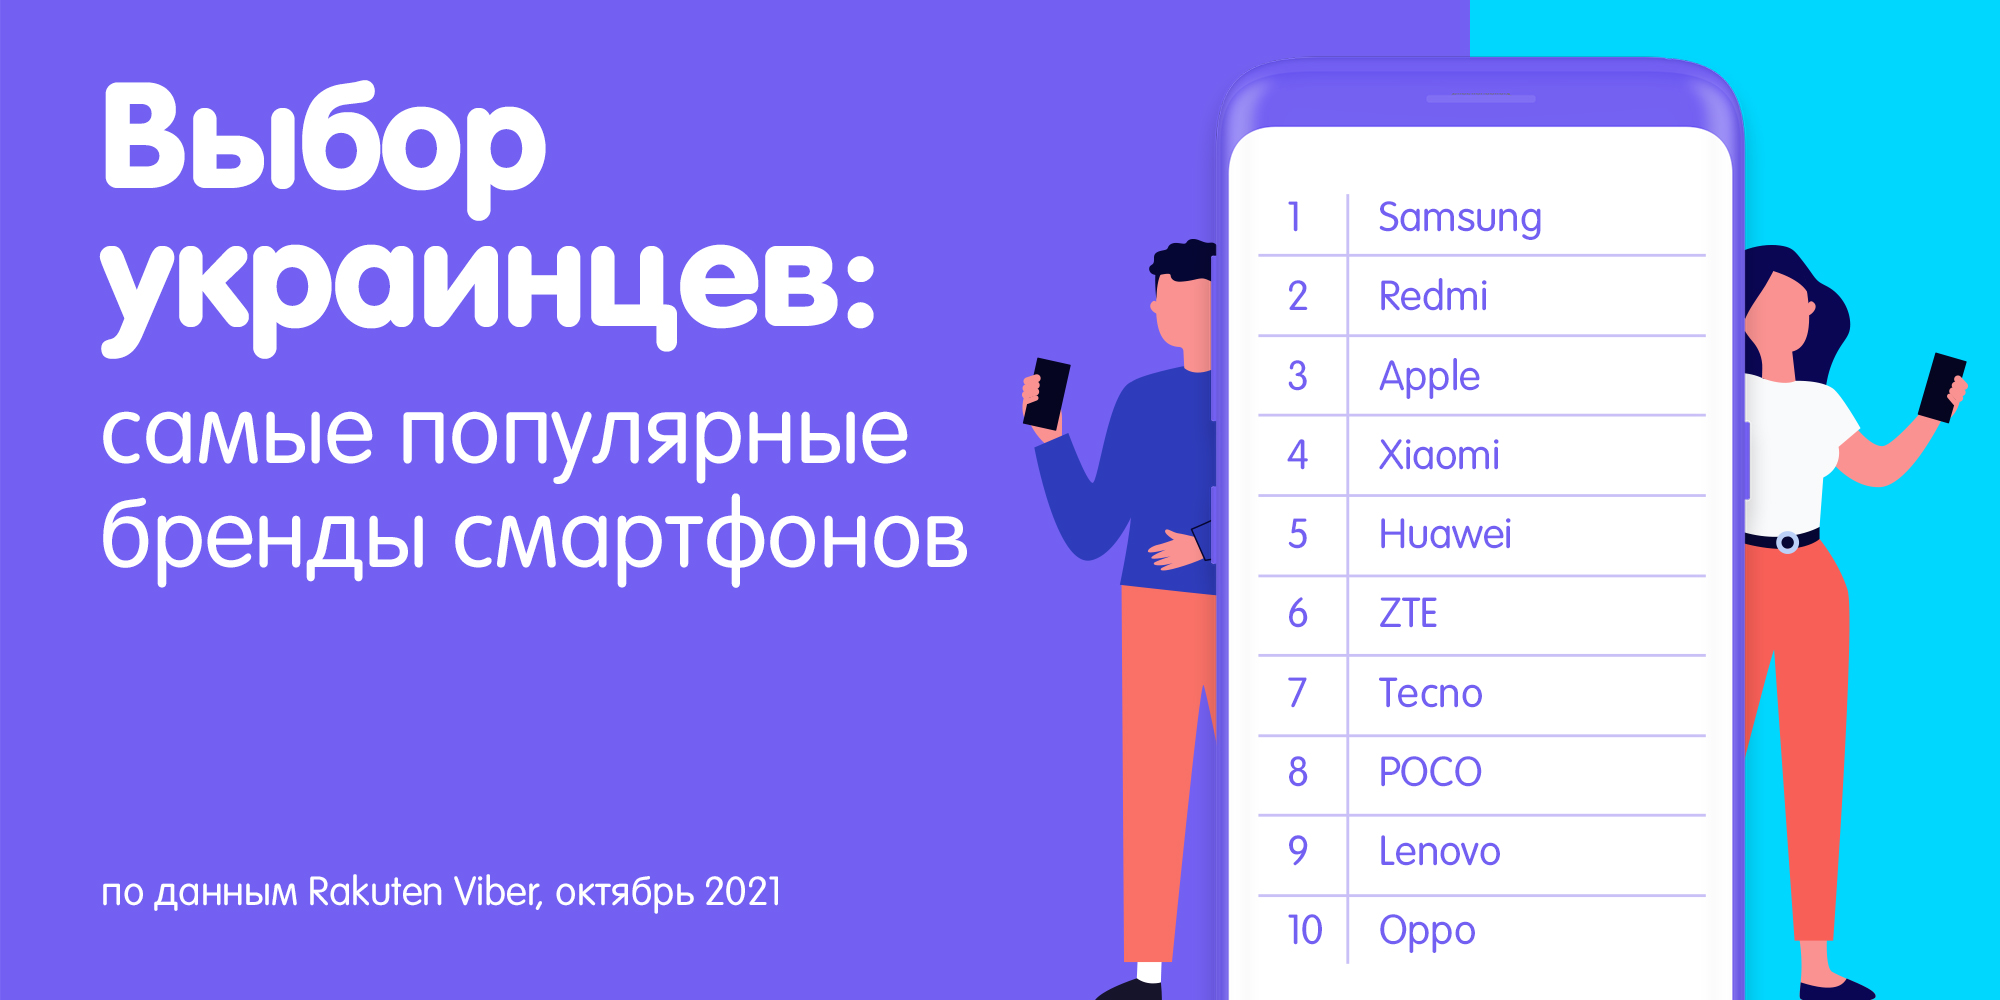 Названы смартфоны, которыми предпочитают пользоваться украинские завсегдатаи Viber